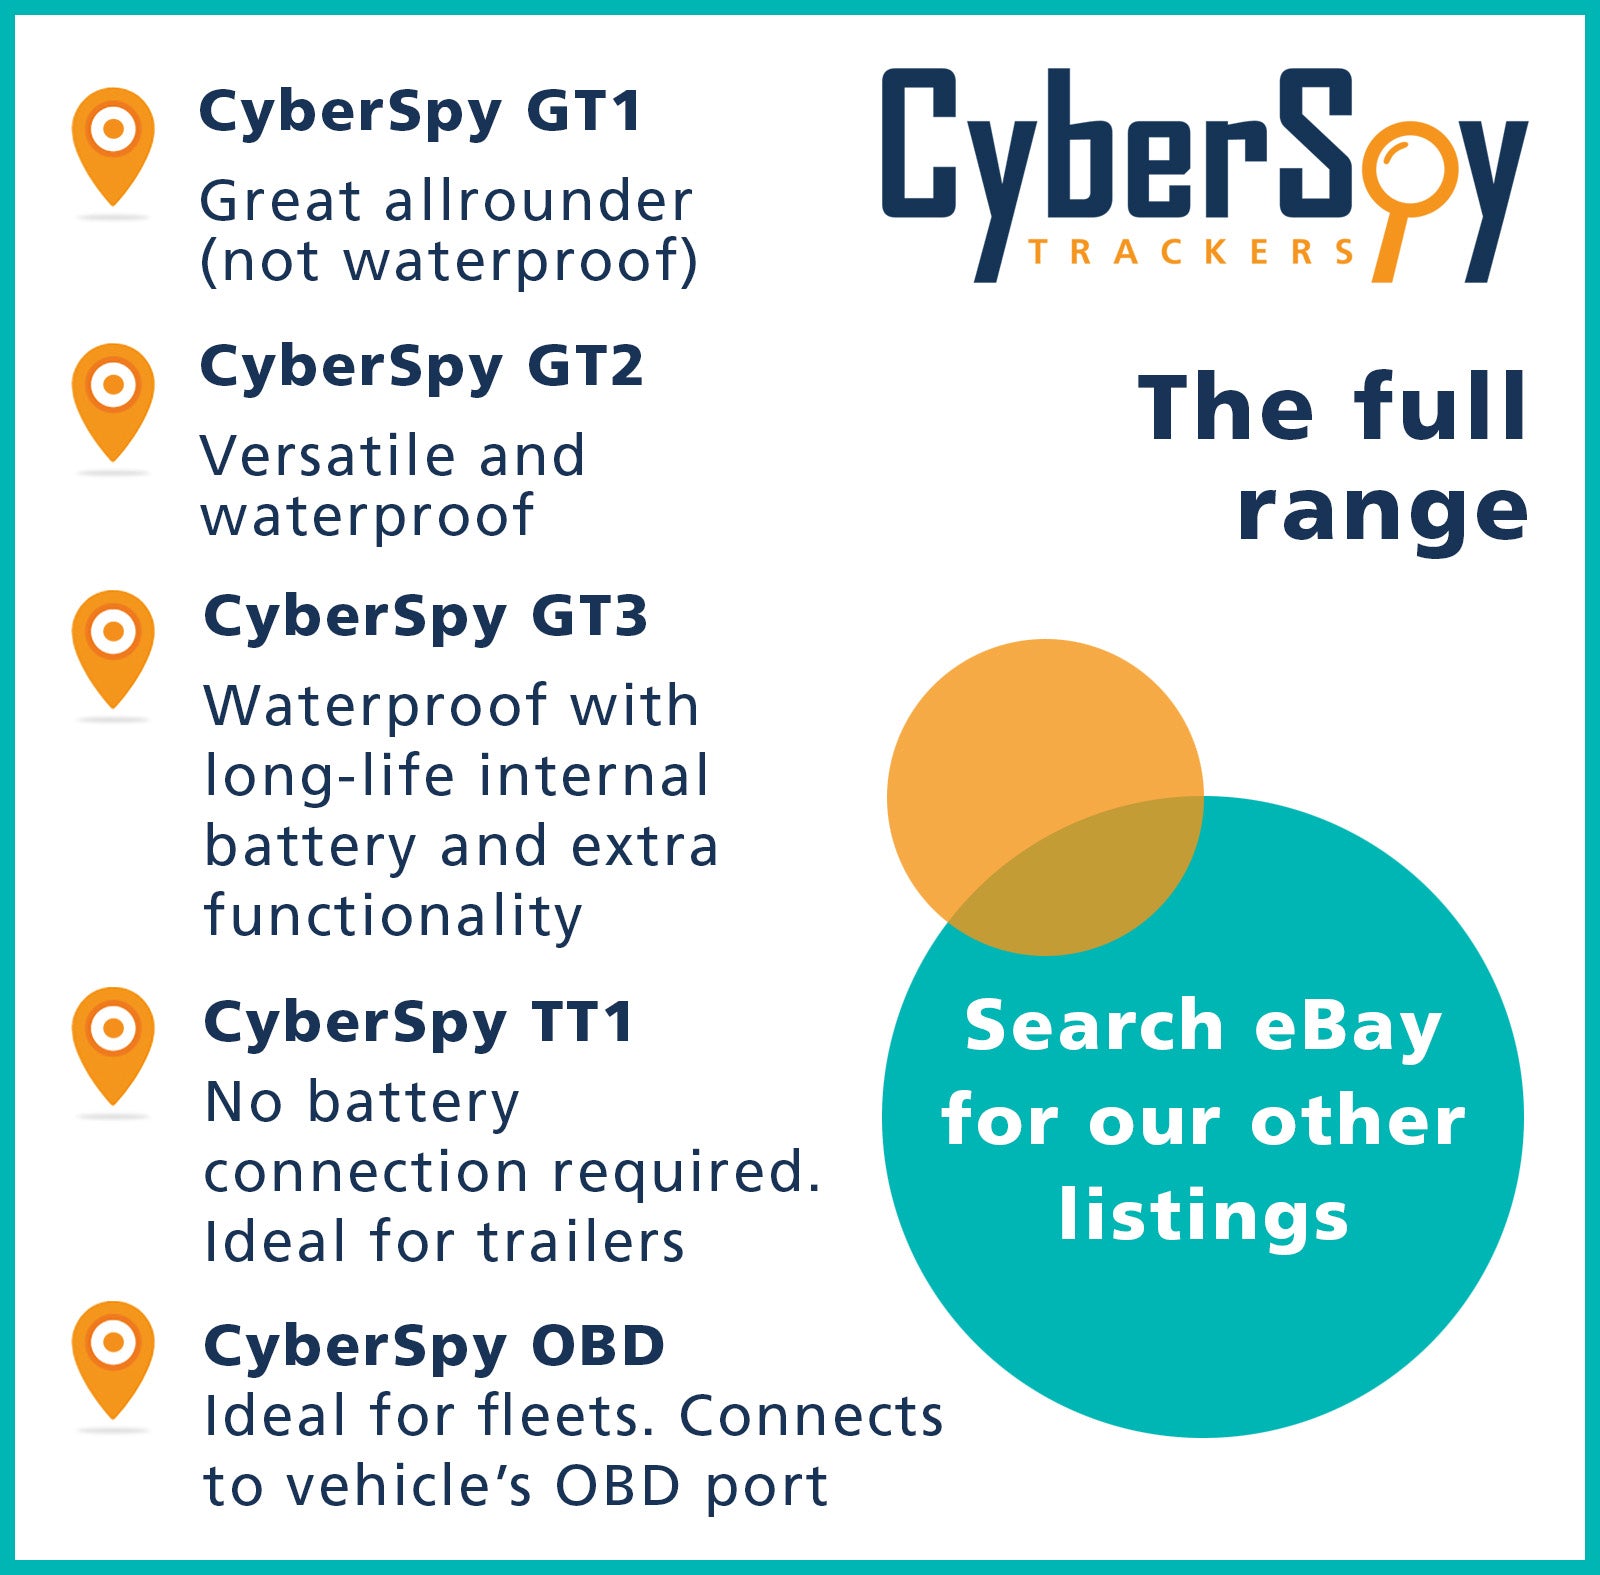 CyberSpy TT1